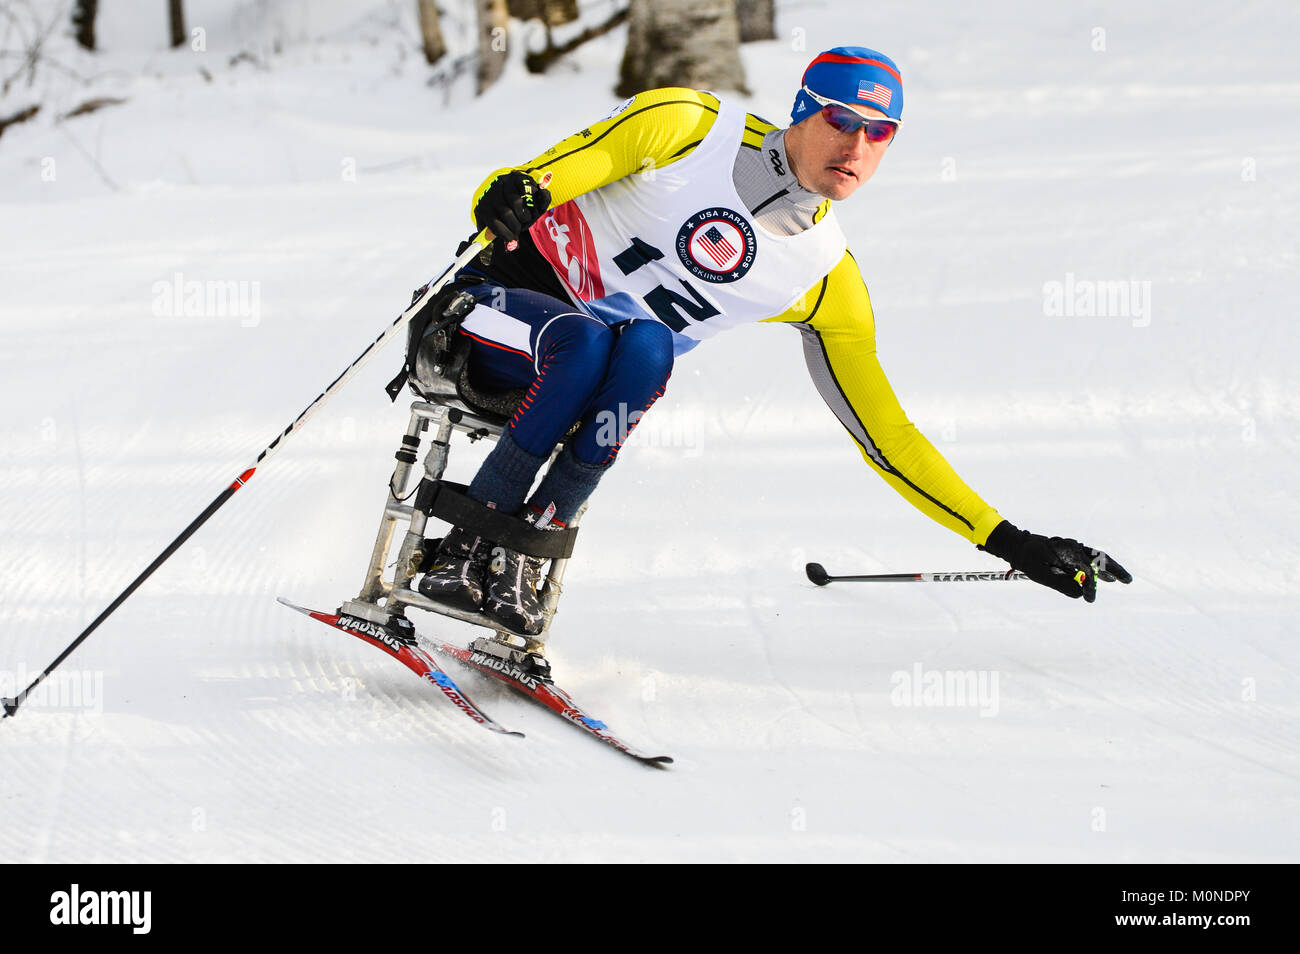 Esquí de fondo paralímpicos racer en 2016 EE.UU., carreras de esquí deportes paralímpicos sentarse al aire libre, centro Craftsbury Craftsbury, VT, ESTADOS UNIDOS. Foto de stock